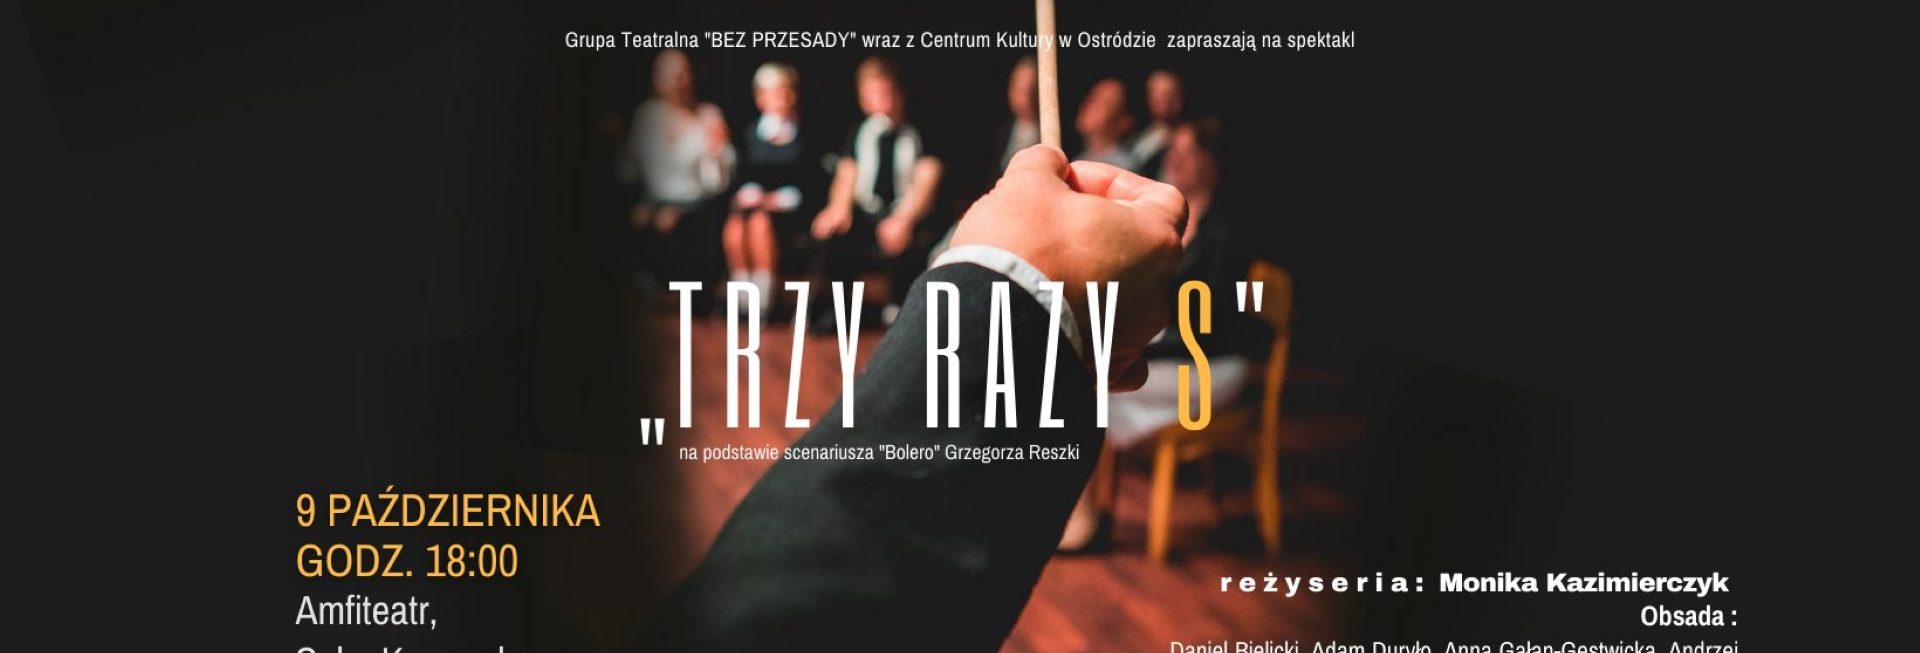 Plakat zapraszający do Ostródy na spektakl teatralny "TRZY RAZY S" Ostróda 2022.